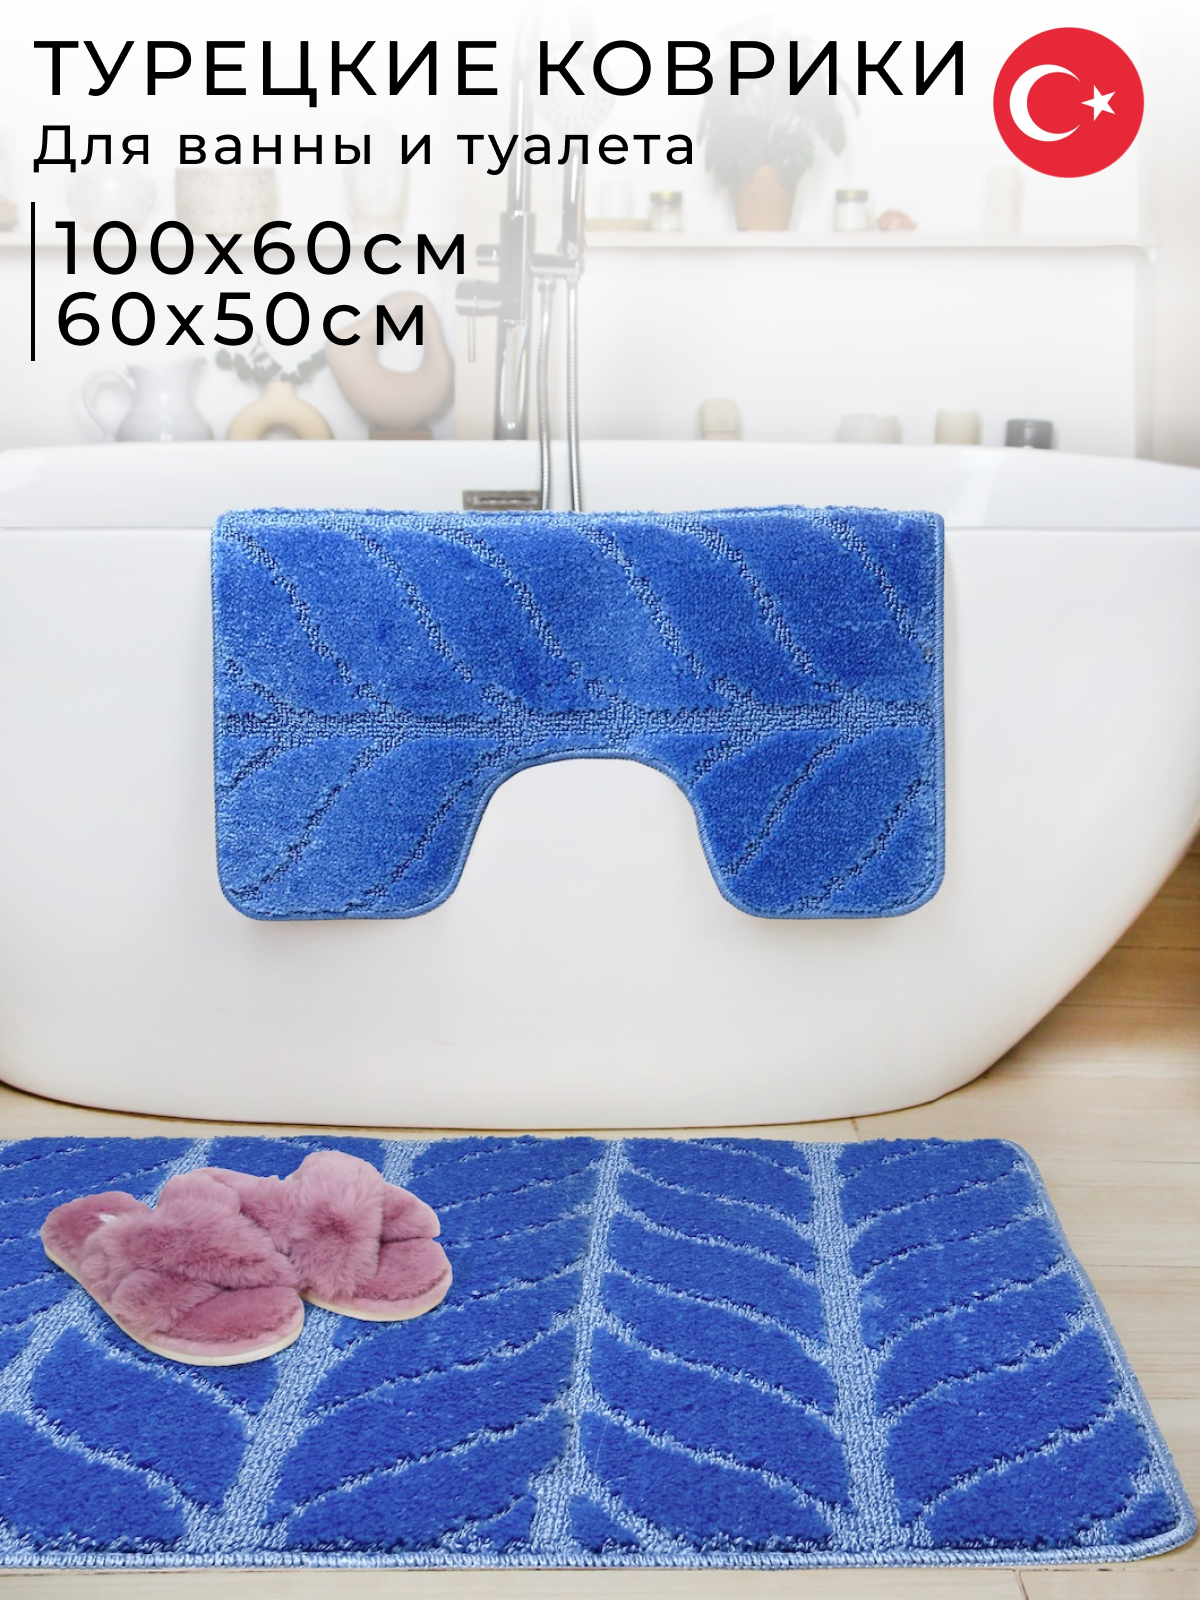 Противоскользящие коврики для ванной и туалета Fantastik 100х60 см и 60х50 см зеленый